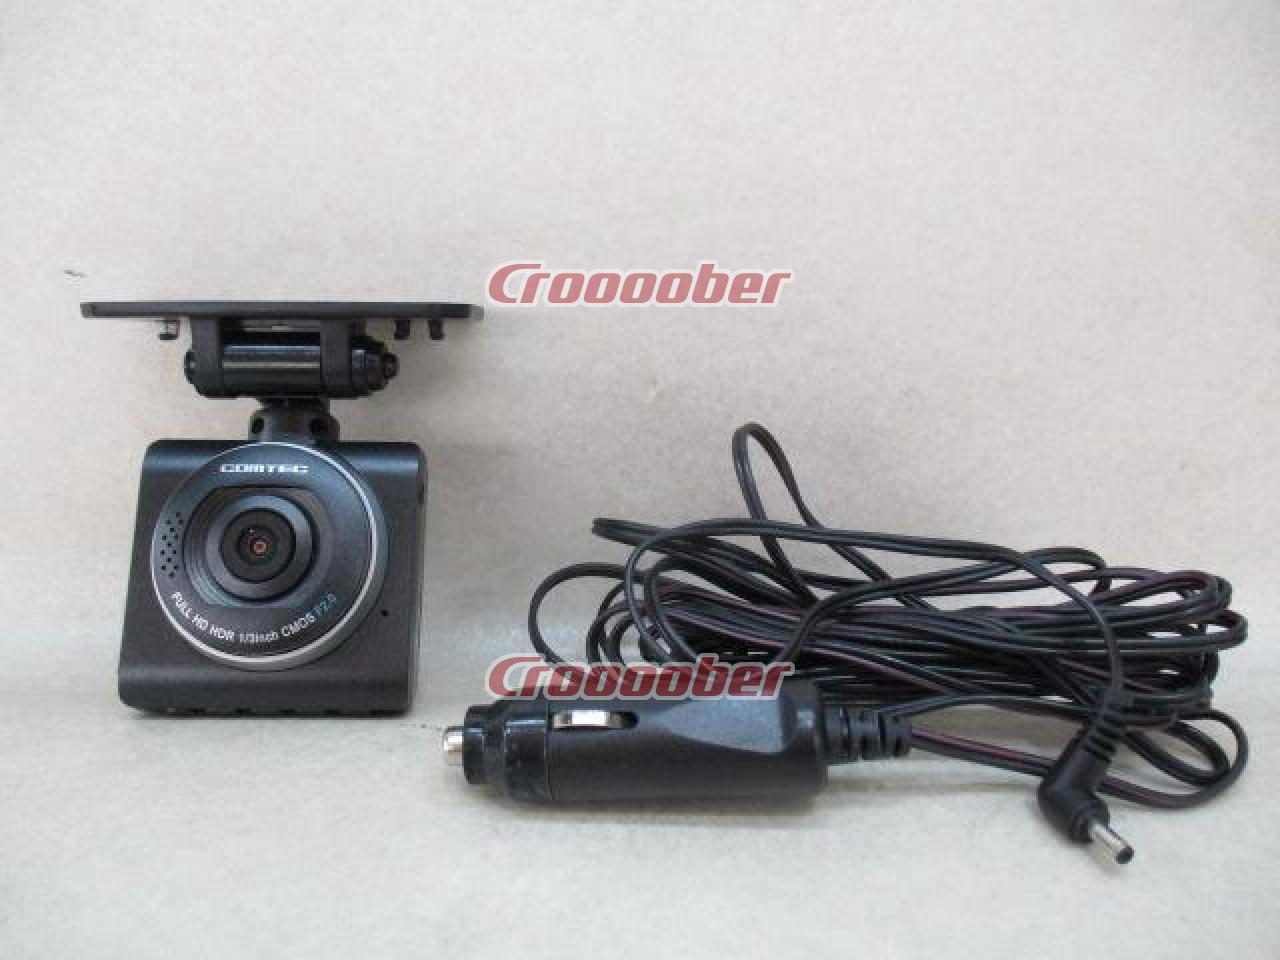 COMTEC ZDR-012 | Drive Recorder | Croooober